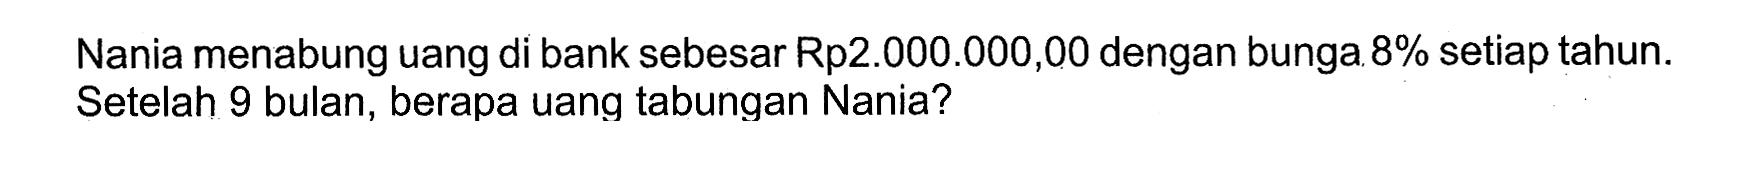 Nania menabung uang di bank sebesar Rp2.000.000,00 dengan bunga  8%  setiap tahun. Setelah 9 bulan, berapa uang tabungan Nania?